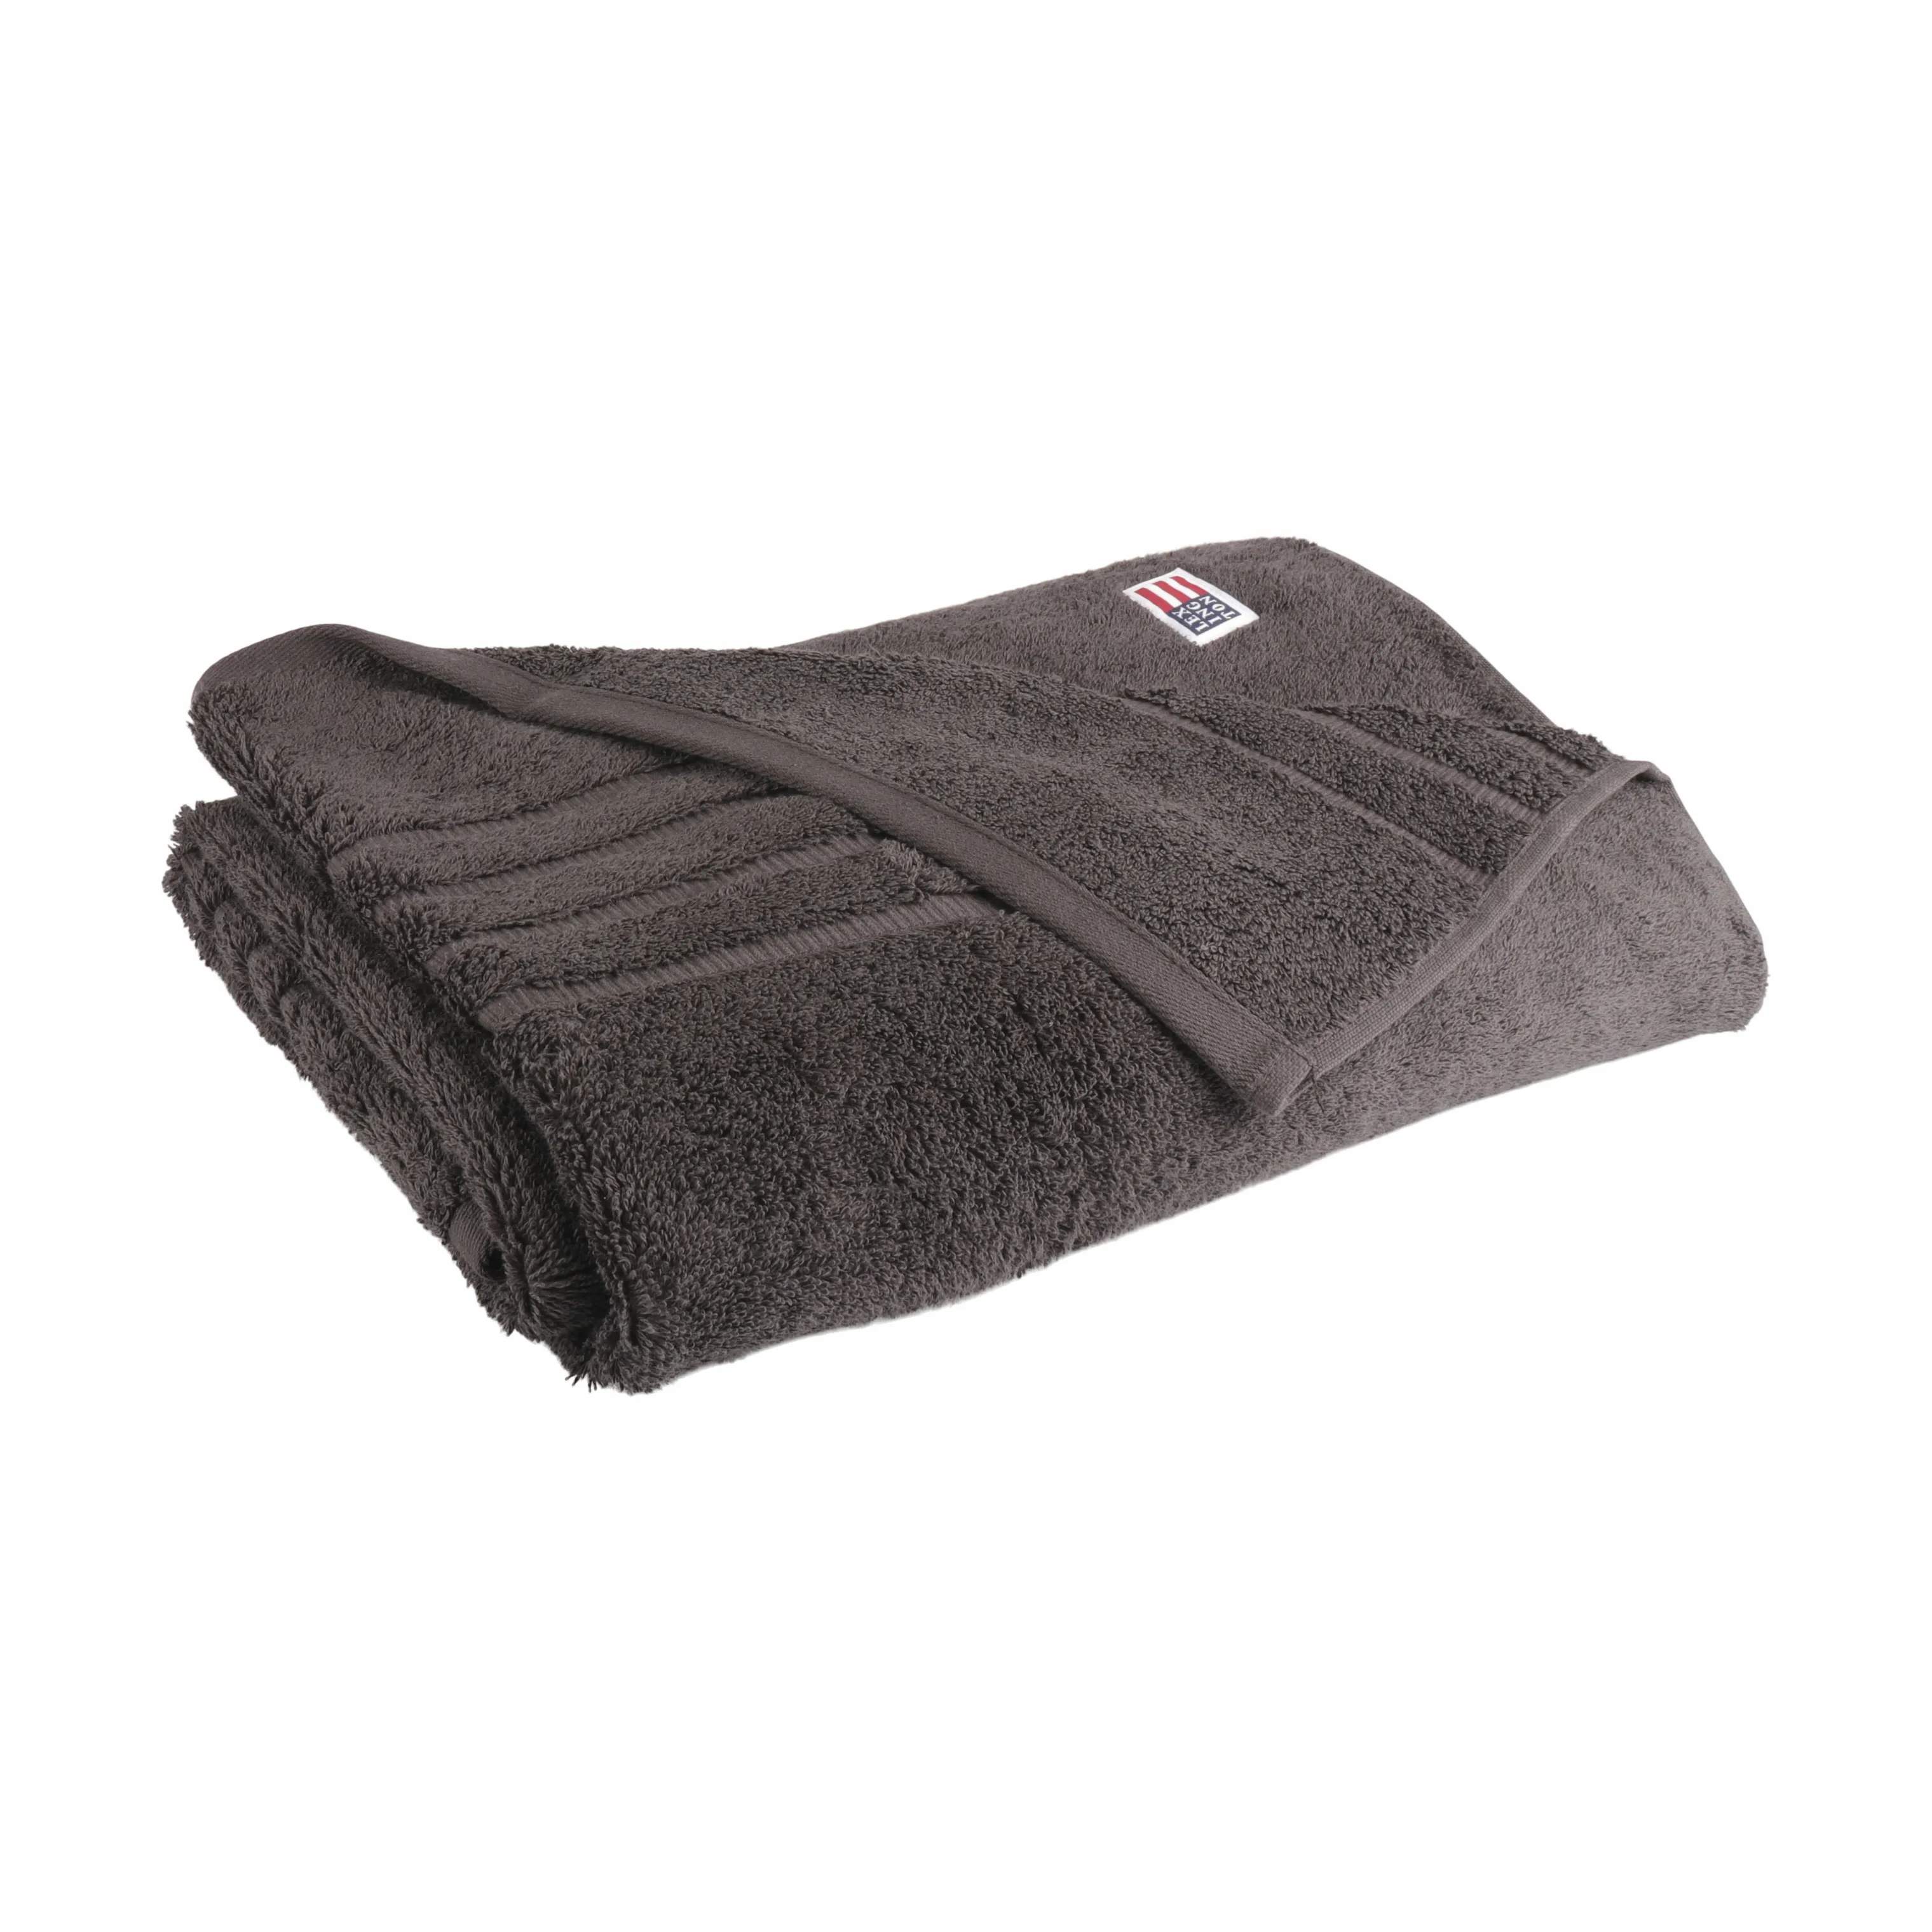 Original Håndklæde, charcoal, large